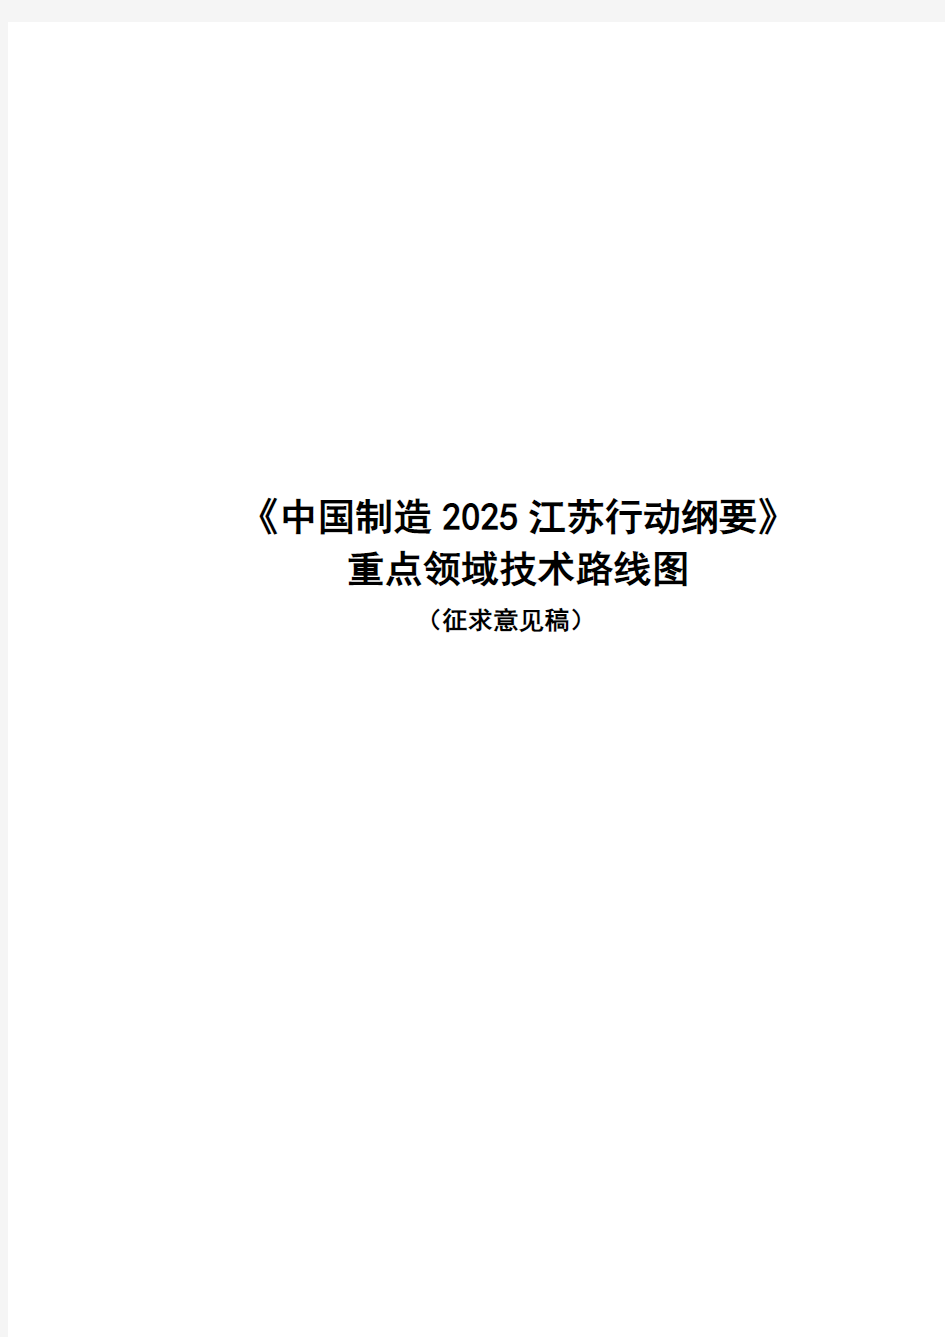 《中国制造2025江苏行动纲要》重点领域技术路线图(征求意见稿)